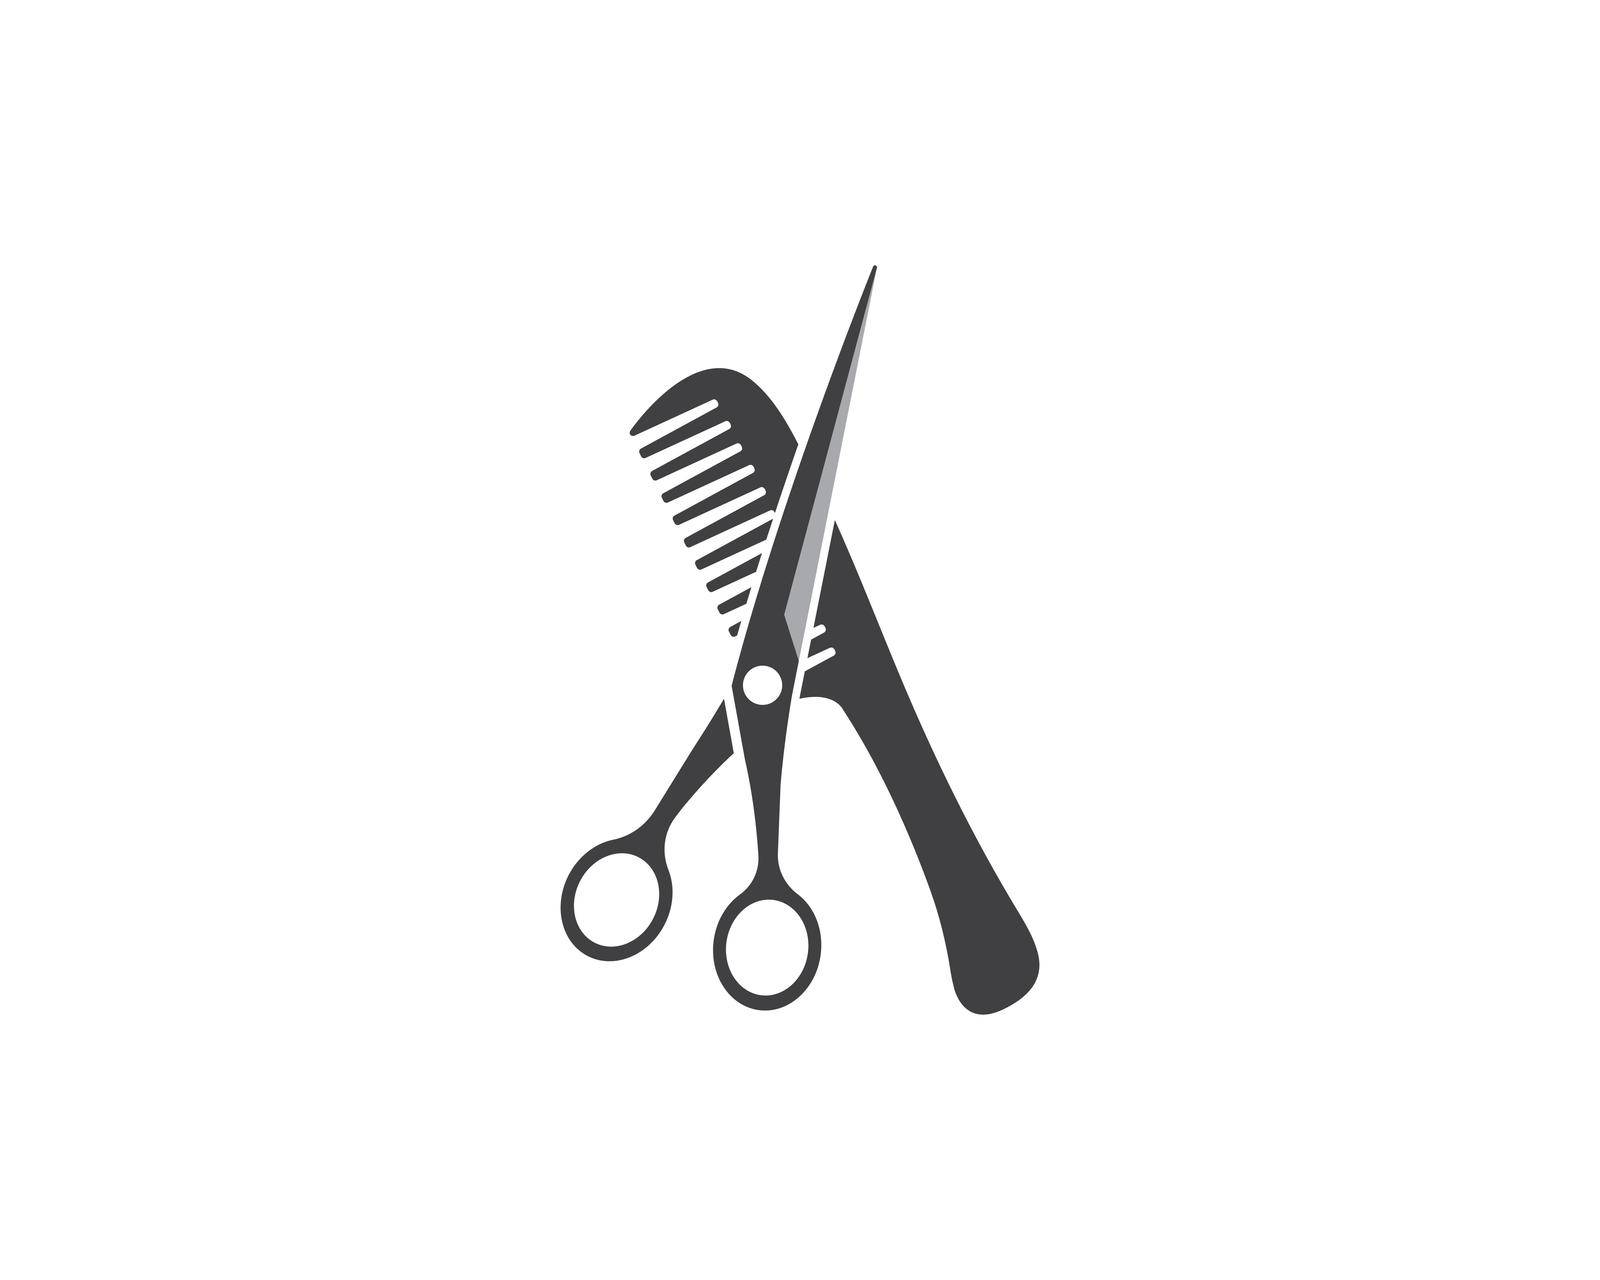 scissor icon logo vector illustration template